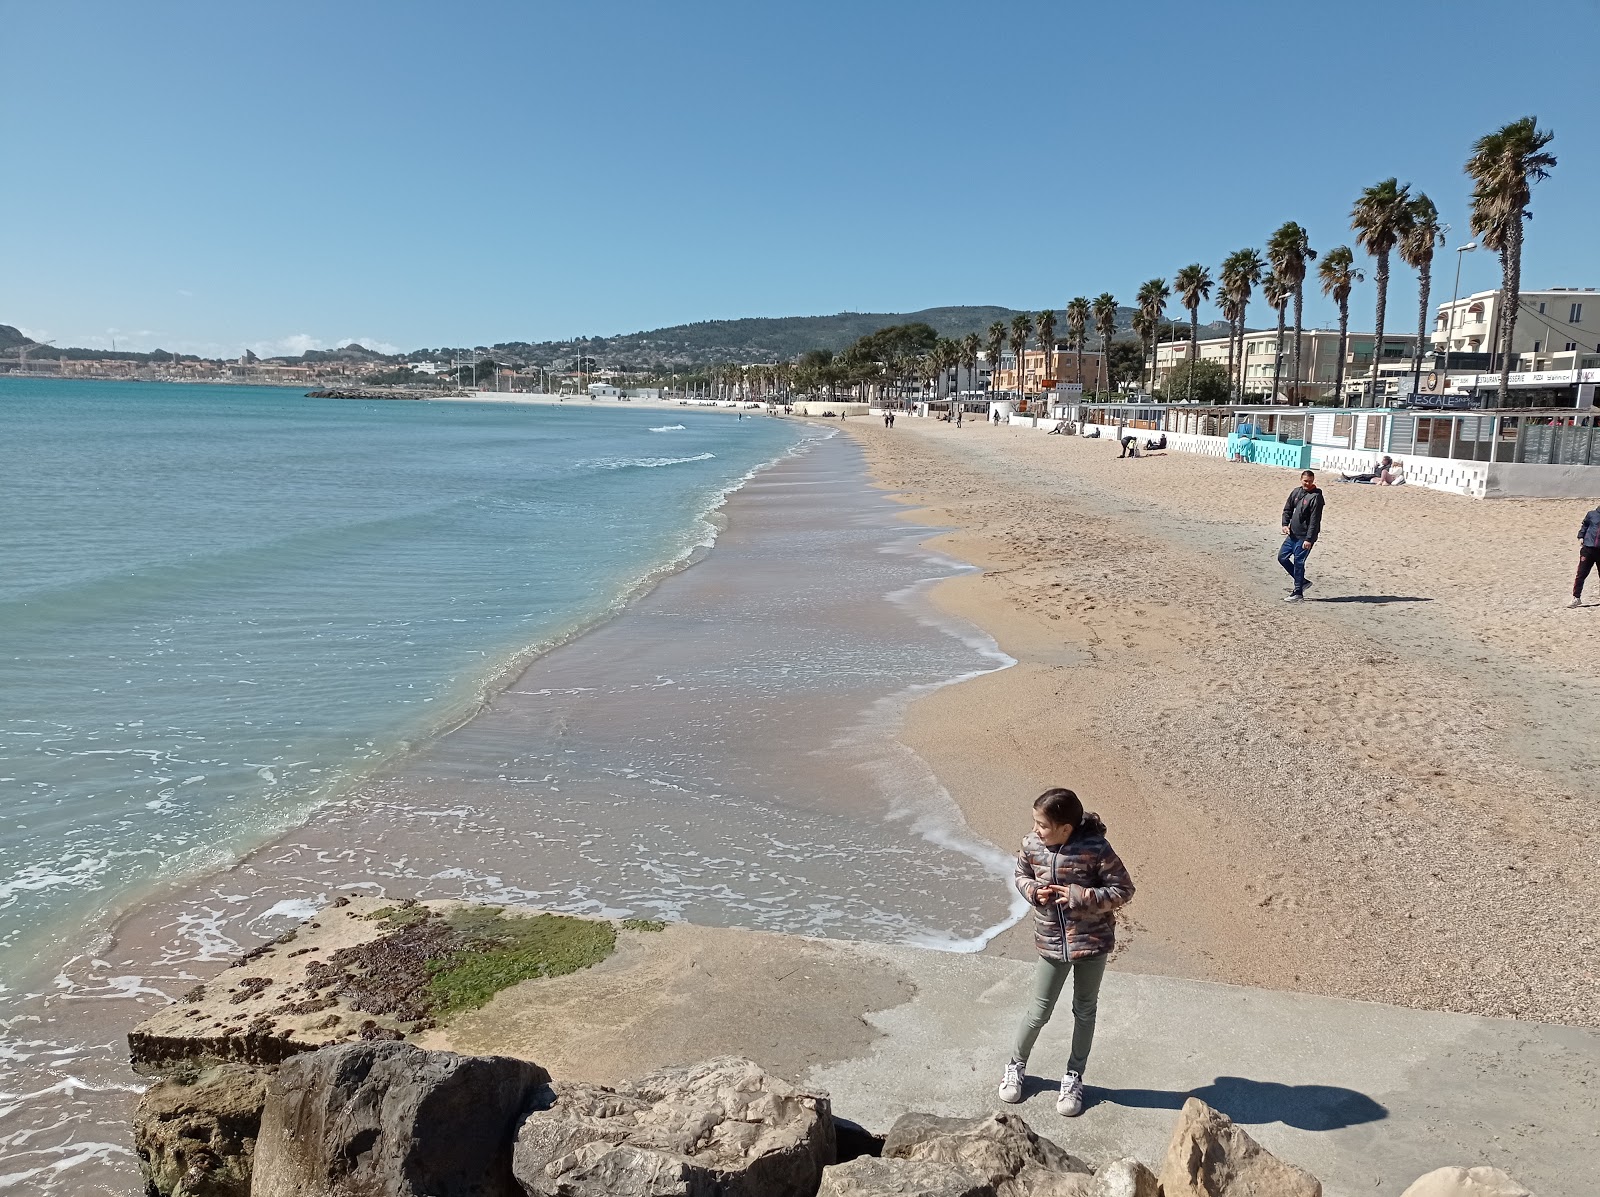 La Ciotat plage'in fotoğrafı parlak ince kum yüzey ile